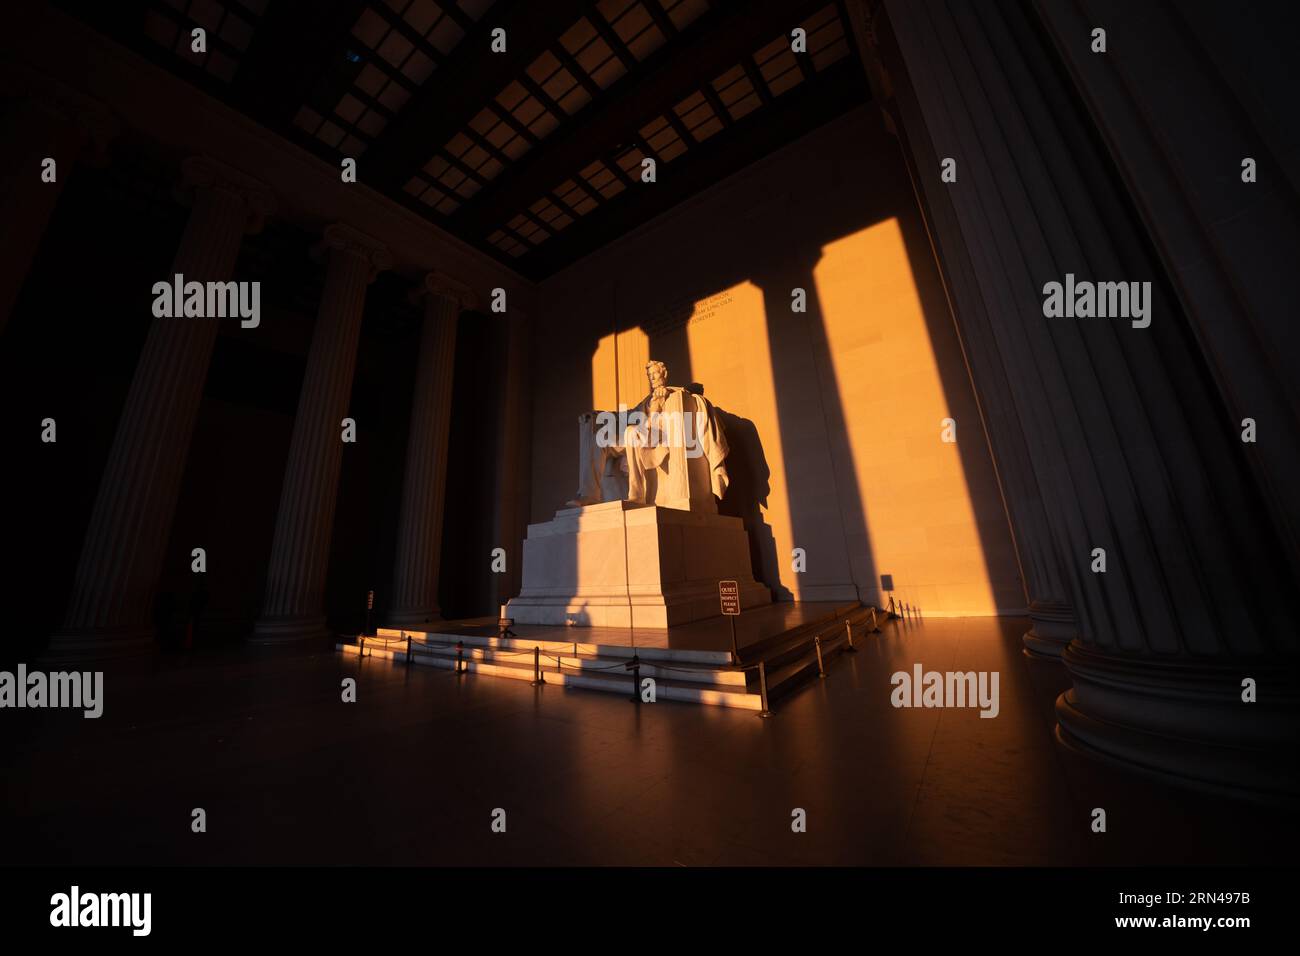 WASHINGTON DC, Vereinigte Staaten – die Statue des Lincoln Memorial, die während der Frühlingssonnenwende vom goldenen Licht des Sonnenaufgangs erleuchtet wird, strahlt ein warmes Licht über das historische Denkmal. Dieses besondere Sonnenereignis unterstreicht die ikonische Hommage an den 16. US-Präsidenten und unterstreicht Abraham Lincolns Rolle in der Geschichte der Nation. Stockfoto